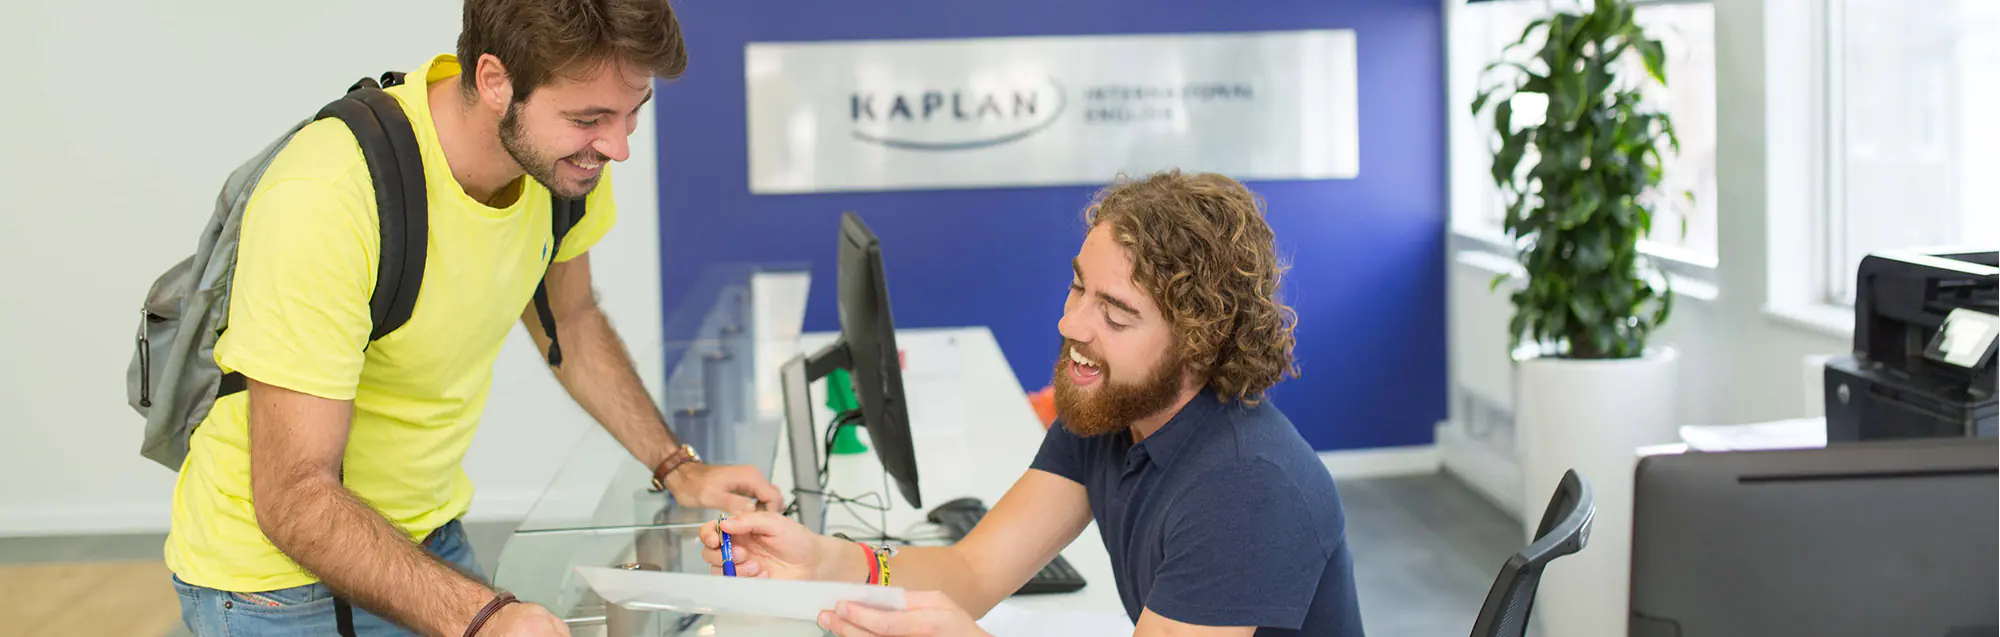 Programmi per studiare e lavorare di Kaplan Liverpool